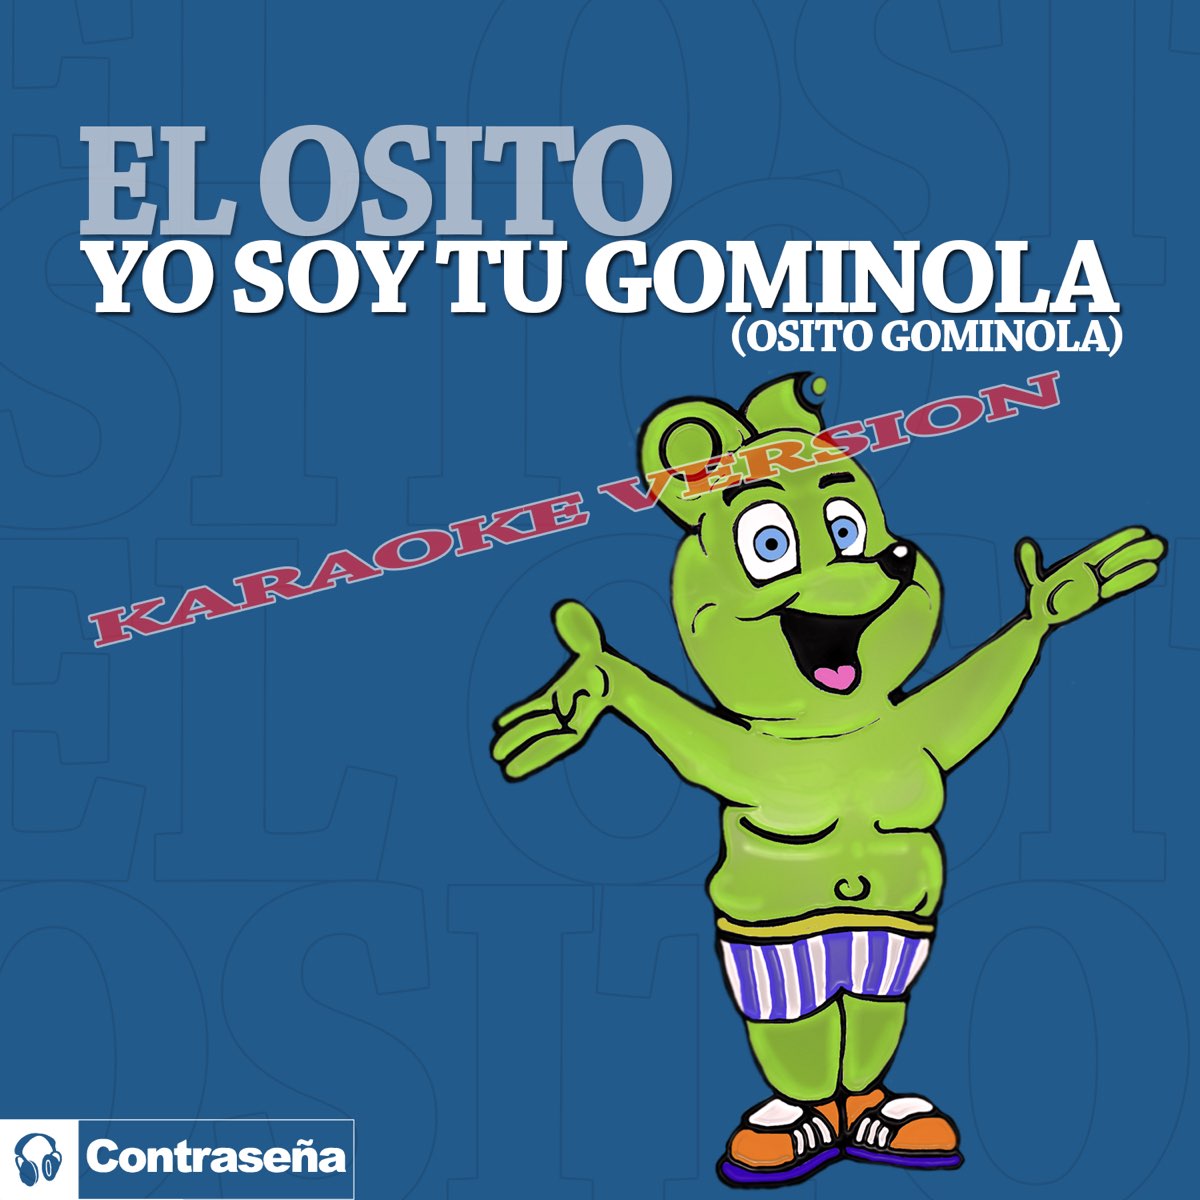 Mancha Reunión Monarca Yo Soy Tu Gominola "Osito Gominola" (Karaoke Version) - Single by El Osito  on Apple Music